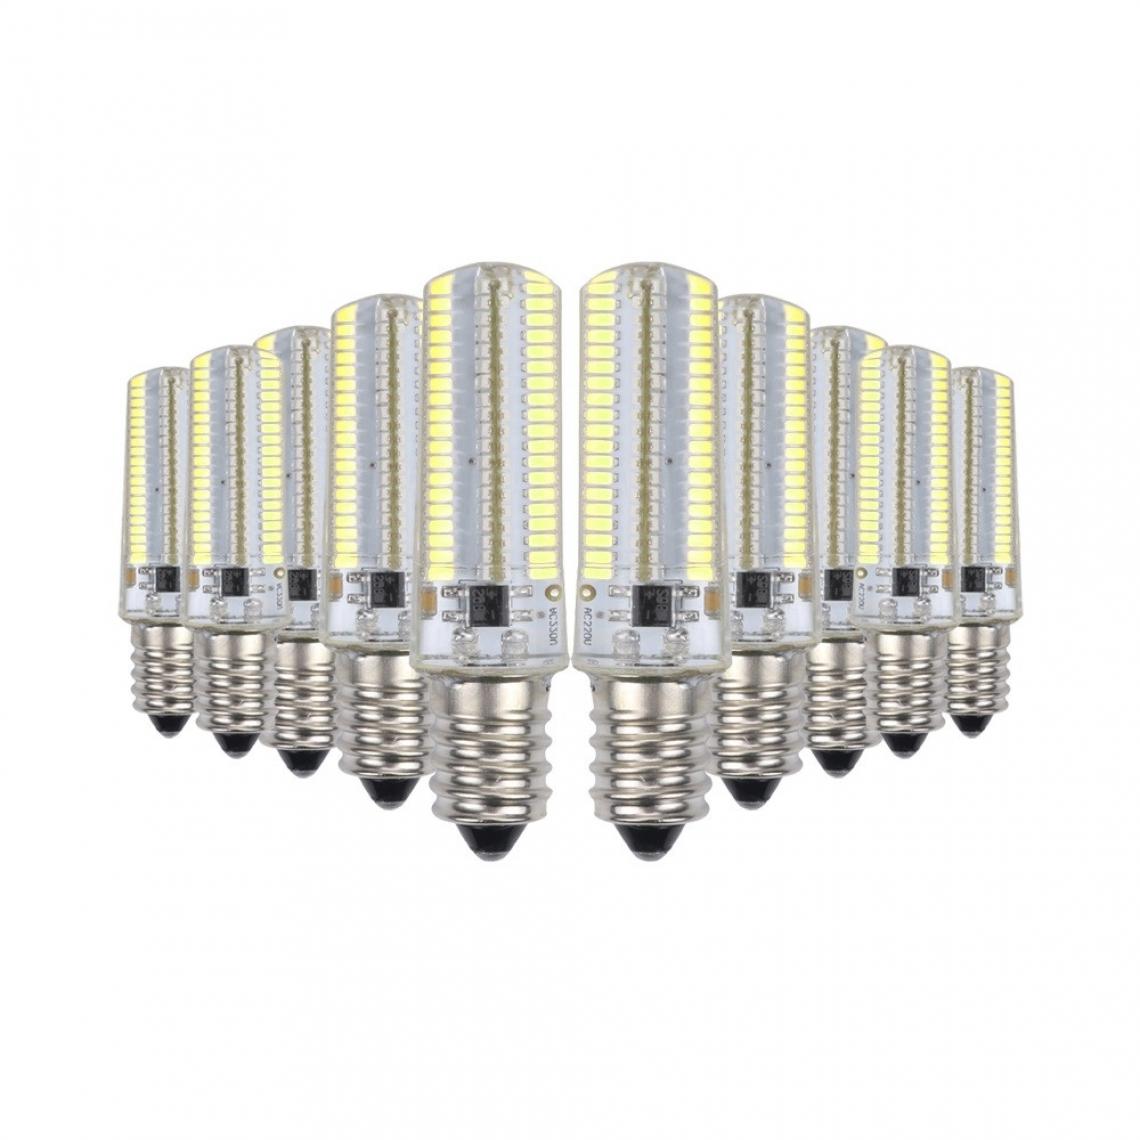 Wewoo - 10 PCS E11 7W 152 LED 3014 SMD 600-700 LM ampoules de maïs en silicone à intensité variable et blanc froidCA 110V - Ampoules LED